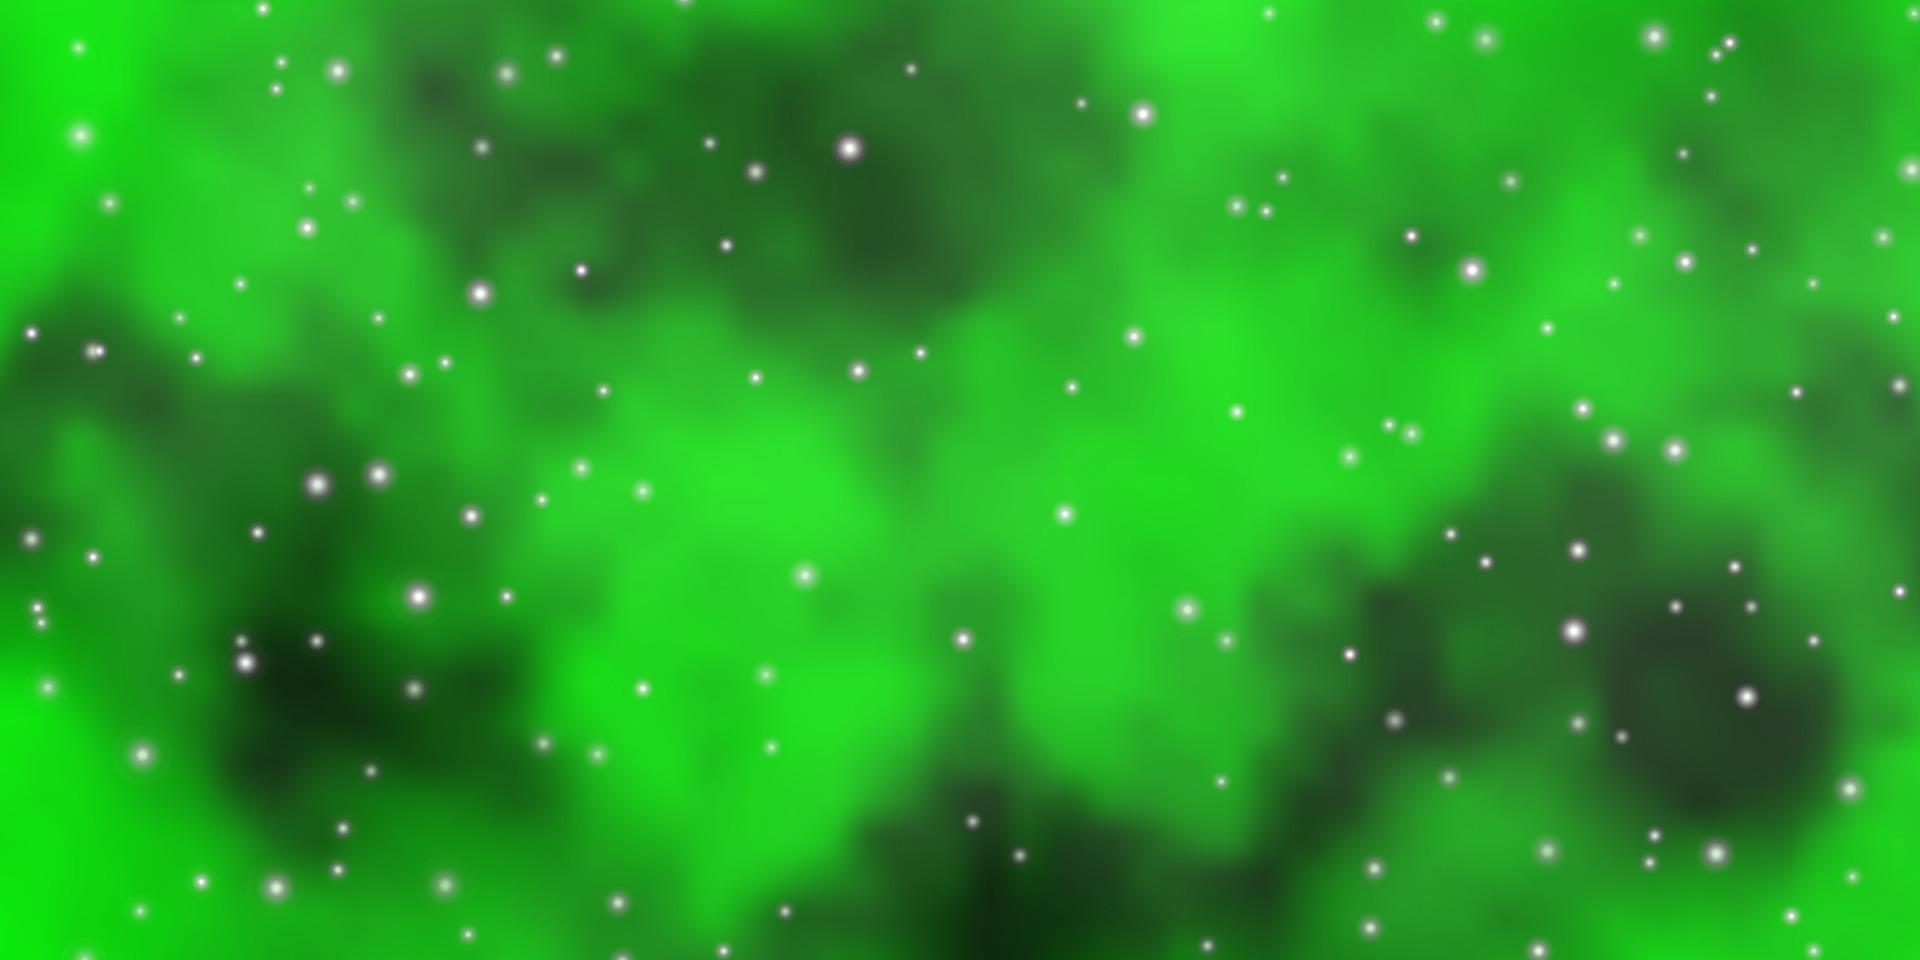 patrón de vector verde claro, amarillo con estrellas abstractas.